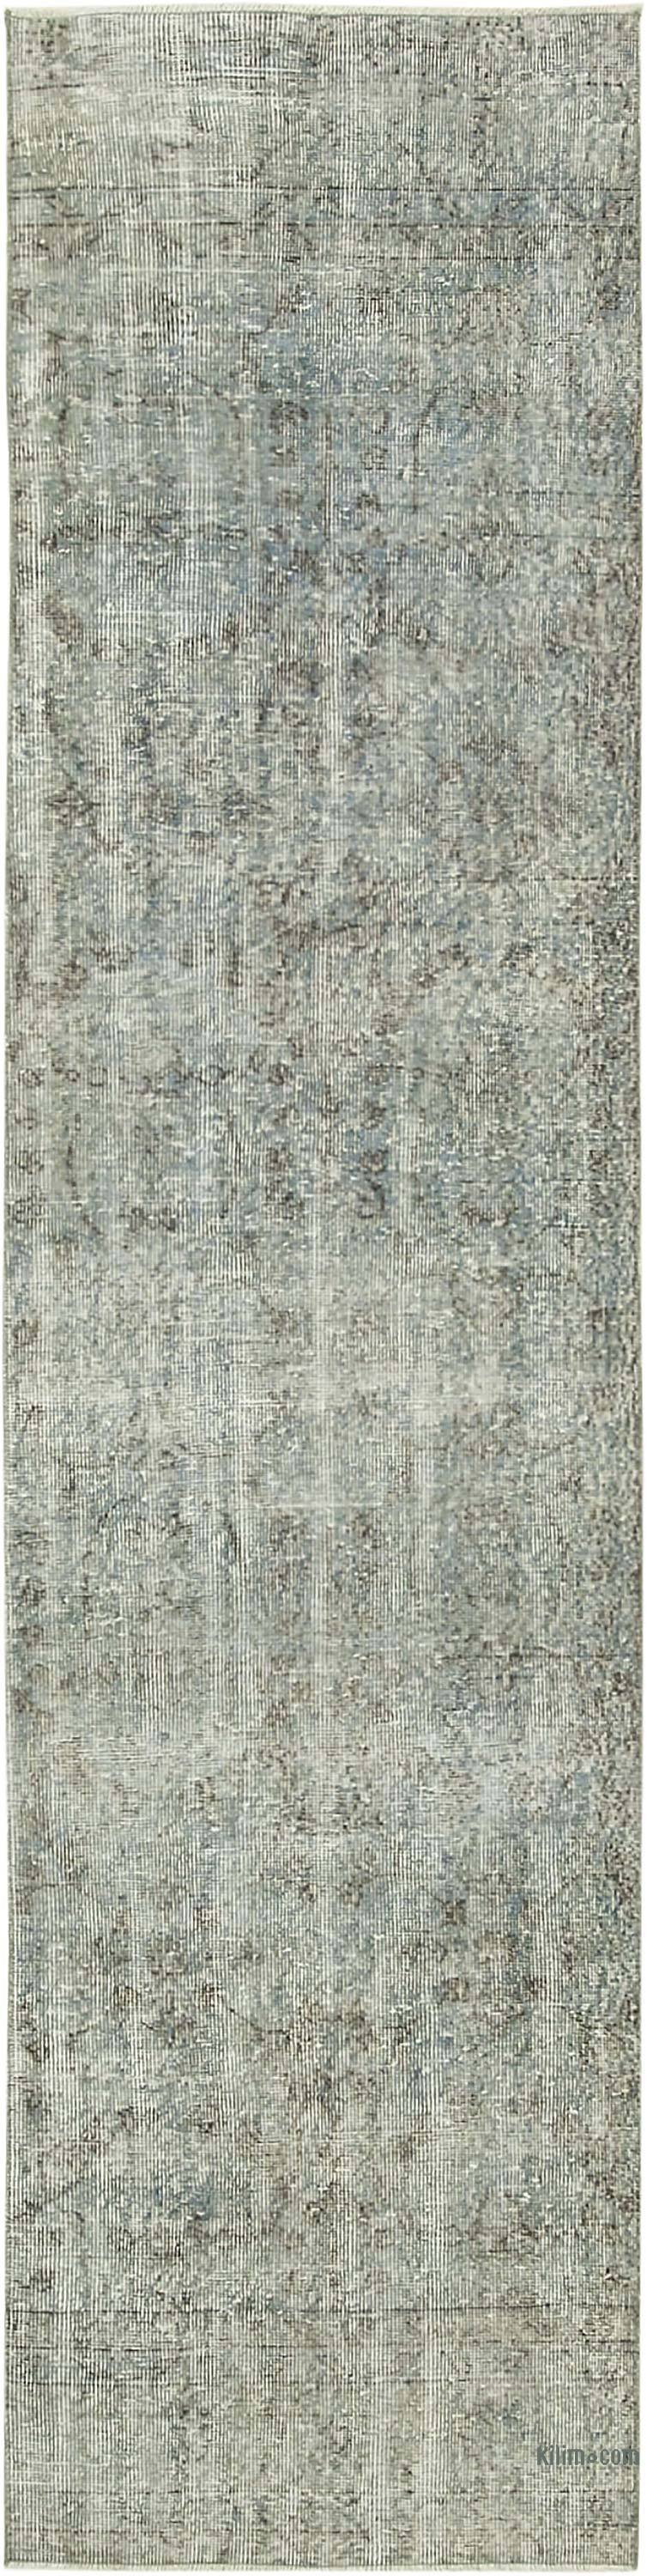 Lacivert Boyalı El Dokuma Vintage Halı Yolluk - 77 cm x 310 cm - K0054561